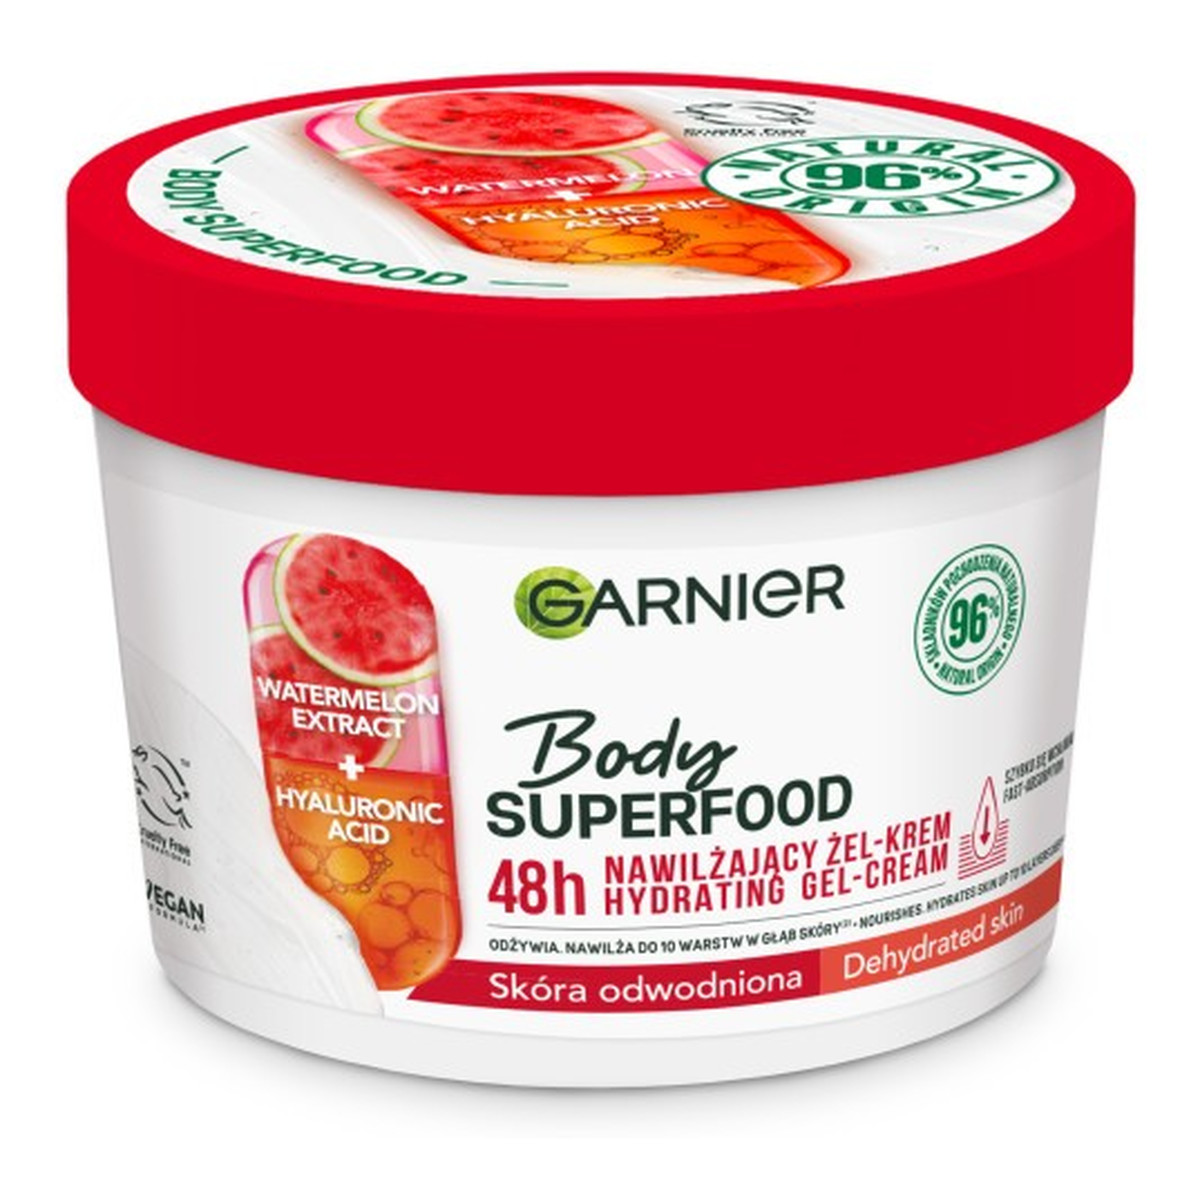 Garnier Body SuperFood Nawilżający Żel-krem do ciała Watermelon Extract + Hyaluronic Acid - skóra odwodniona 380ml